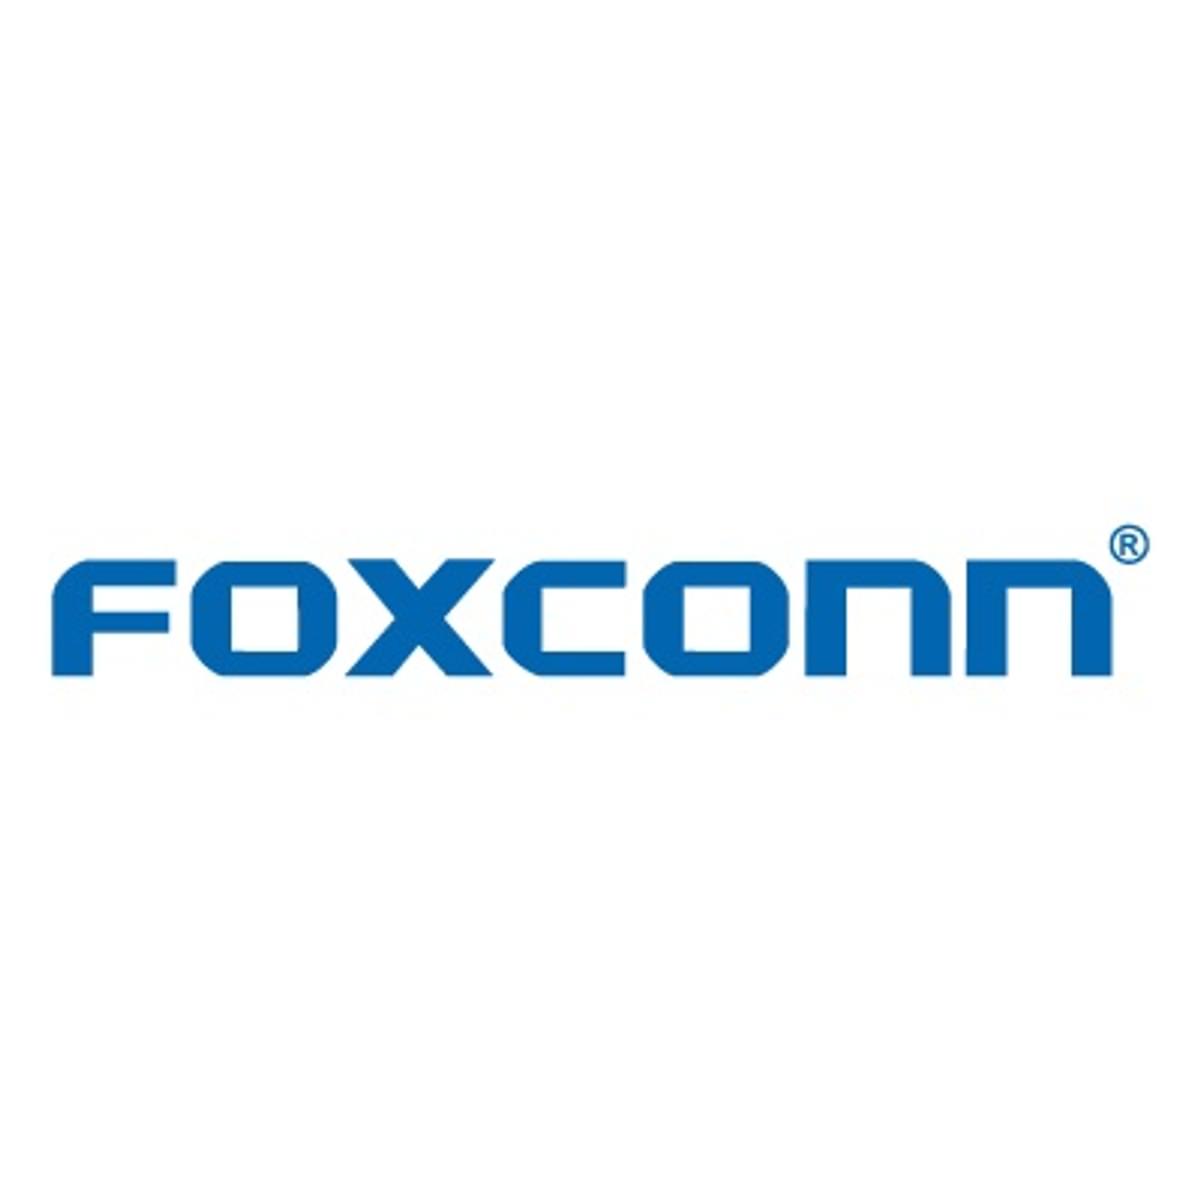 Young Liu wordt nieuwe voorzitter van Foxconn image